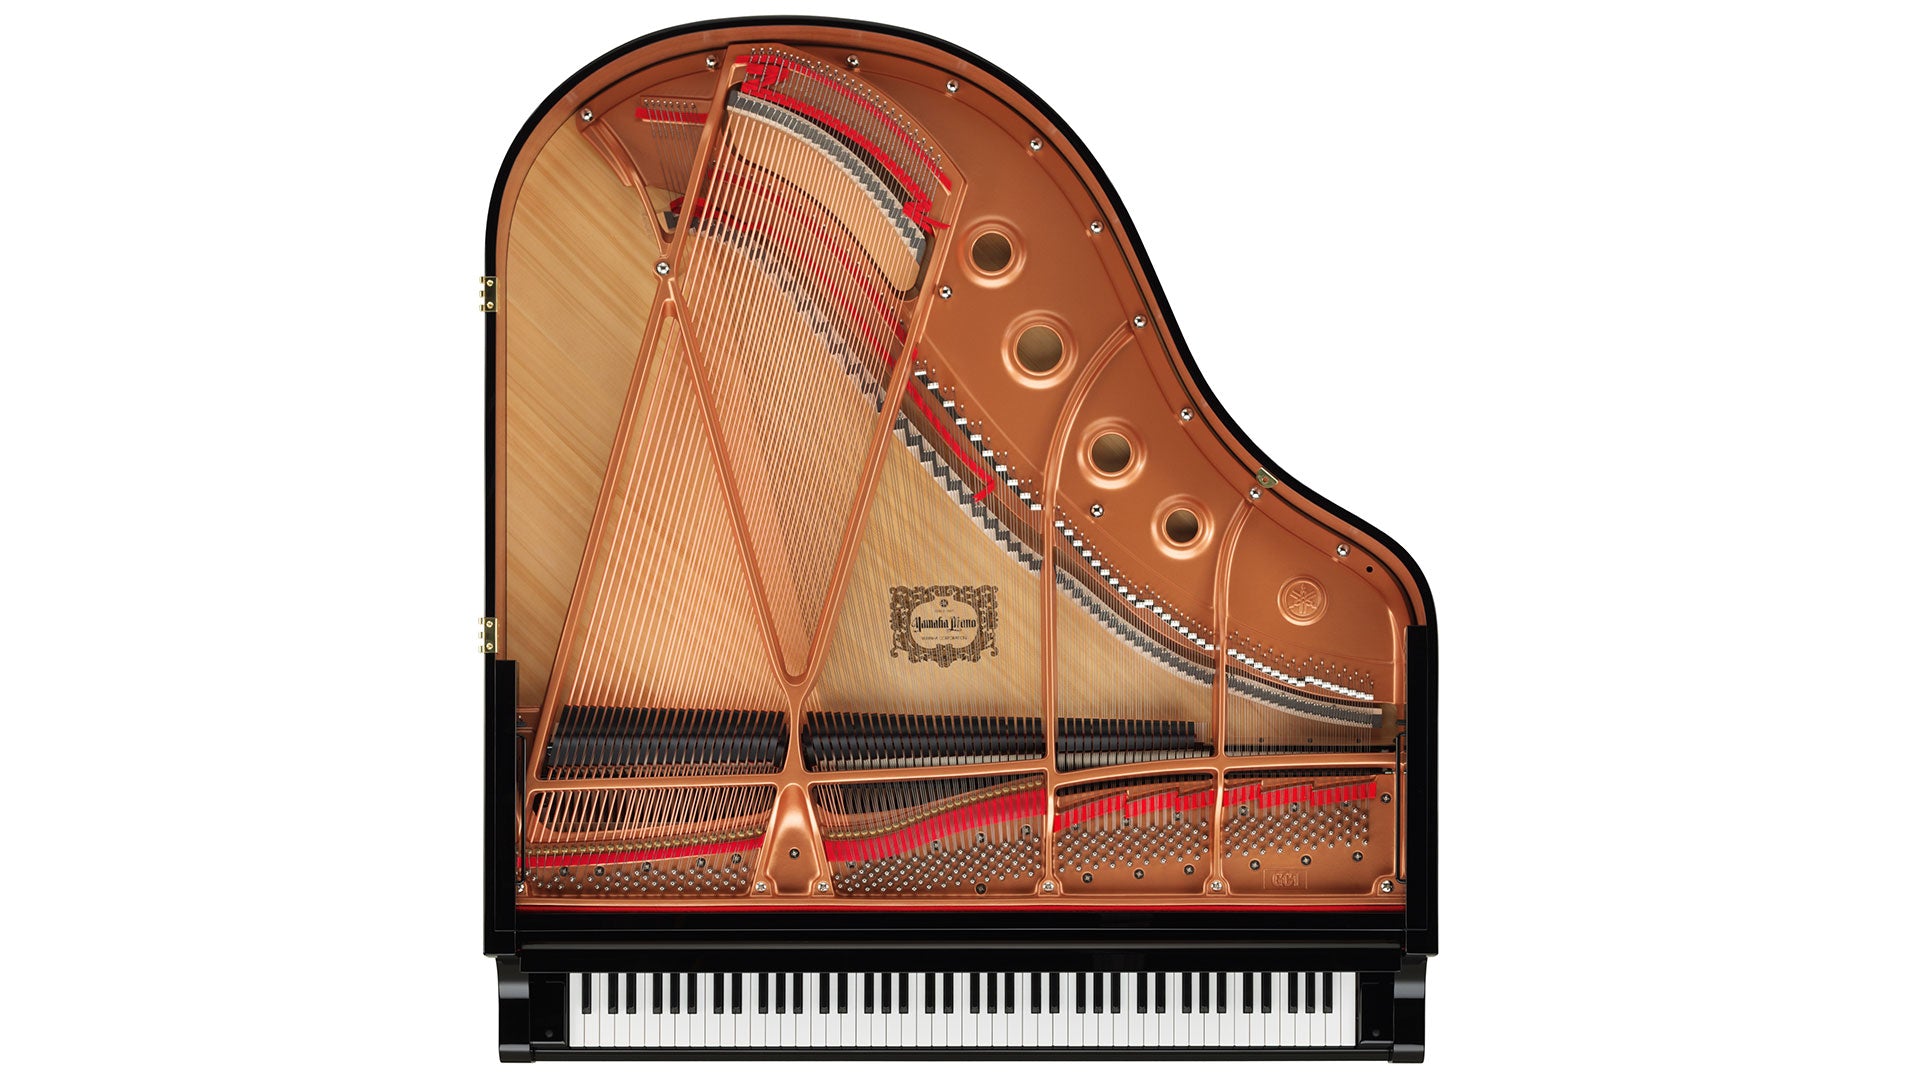 Yamaha DGC1 Disklavier Baby Grand Piano in Ebony Polish